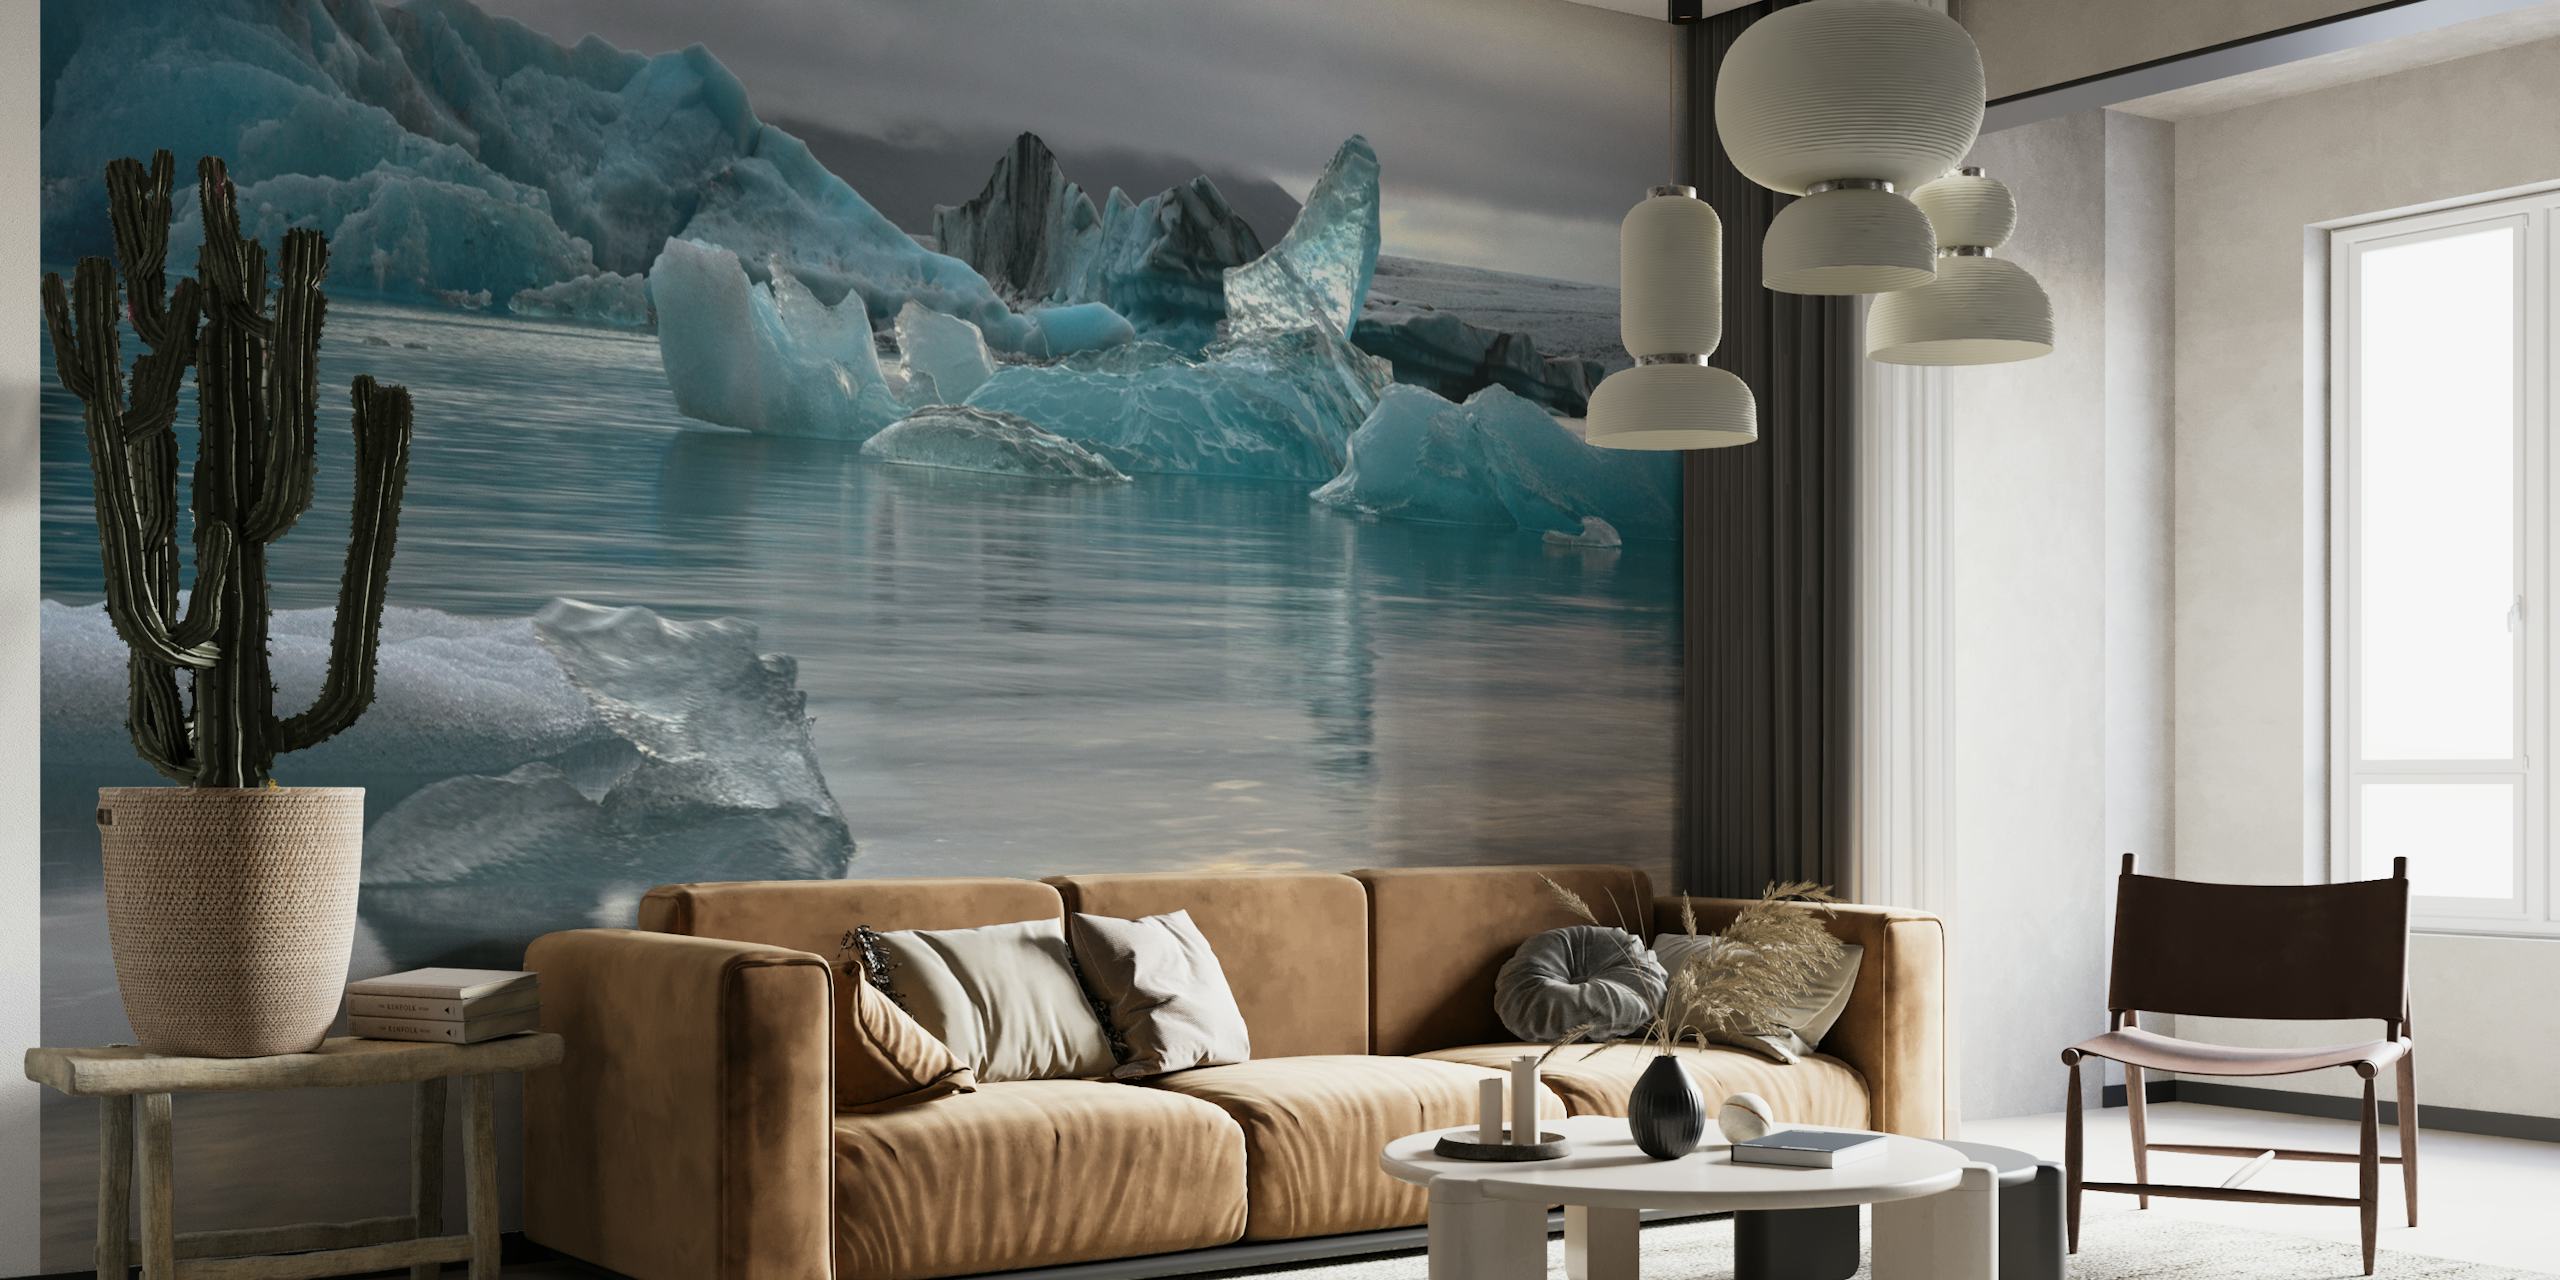 IJsbergmuurschildering met kalm water dat een zachte lucht weerspiegelt